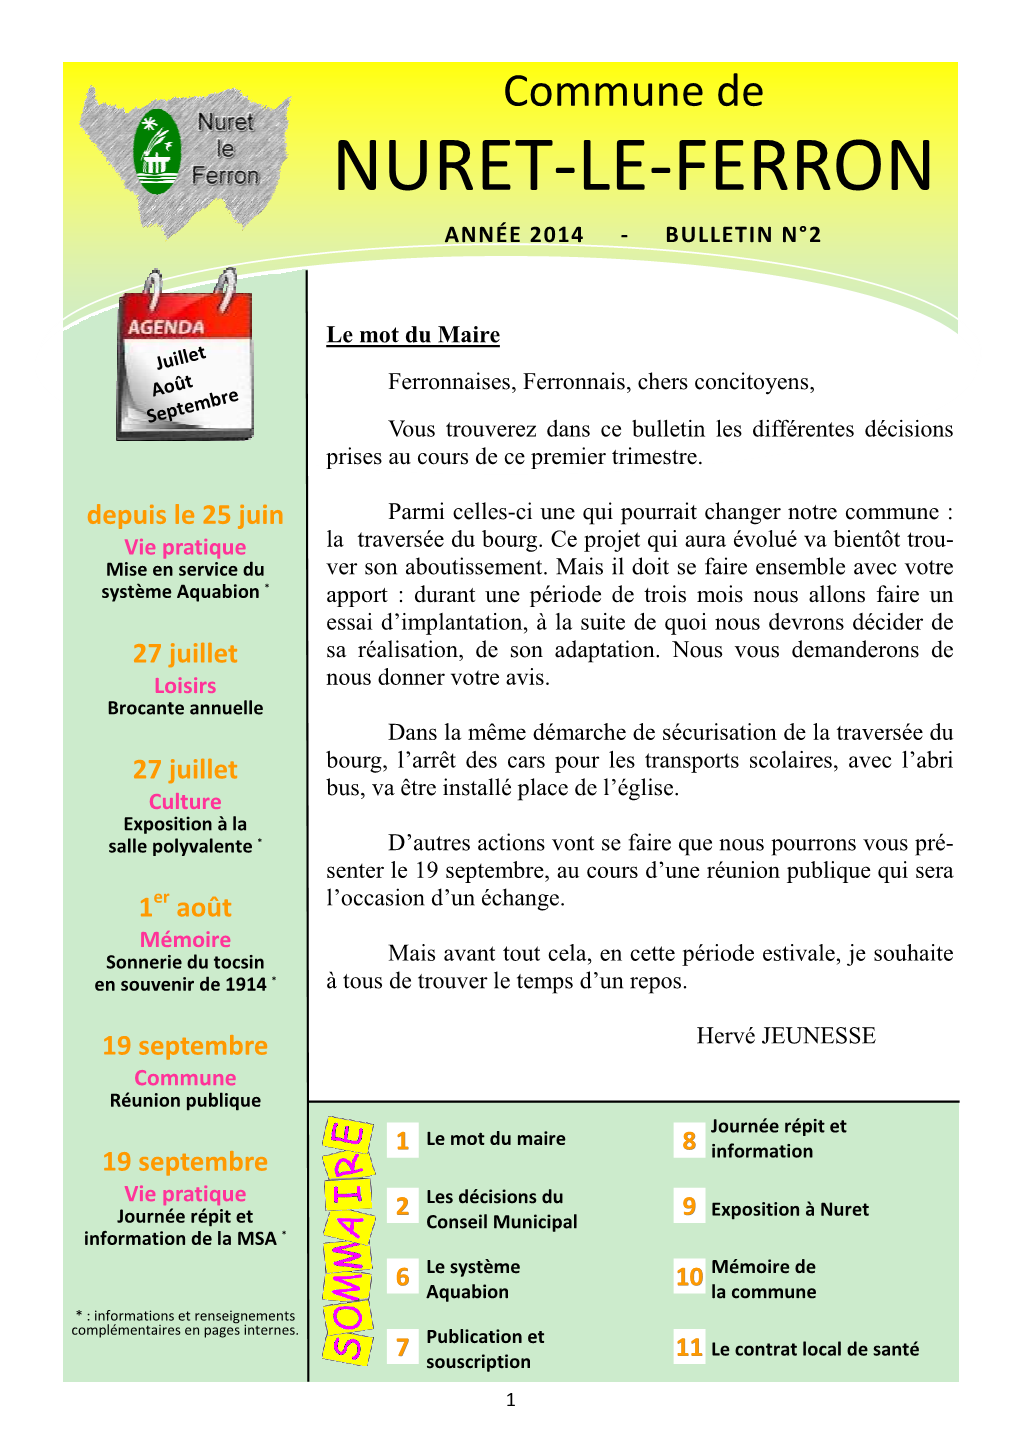 Nuret-Le-Ferron Année 2014 - Bulletin N°2